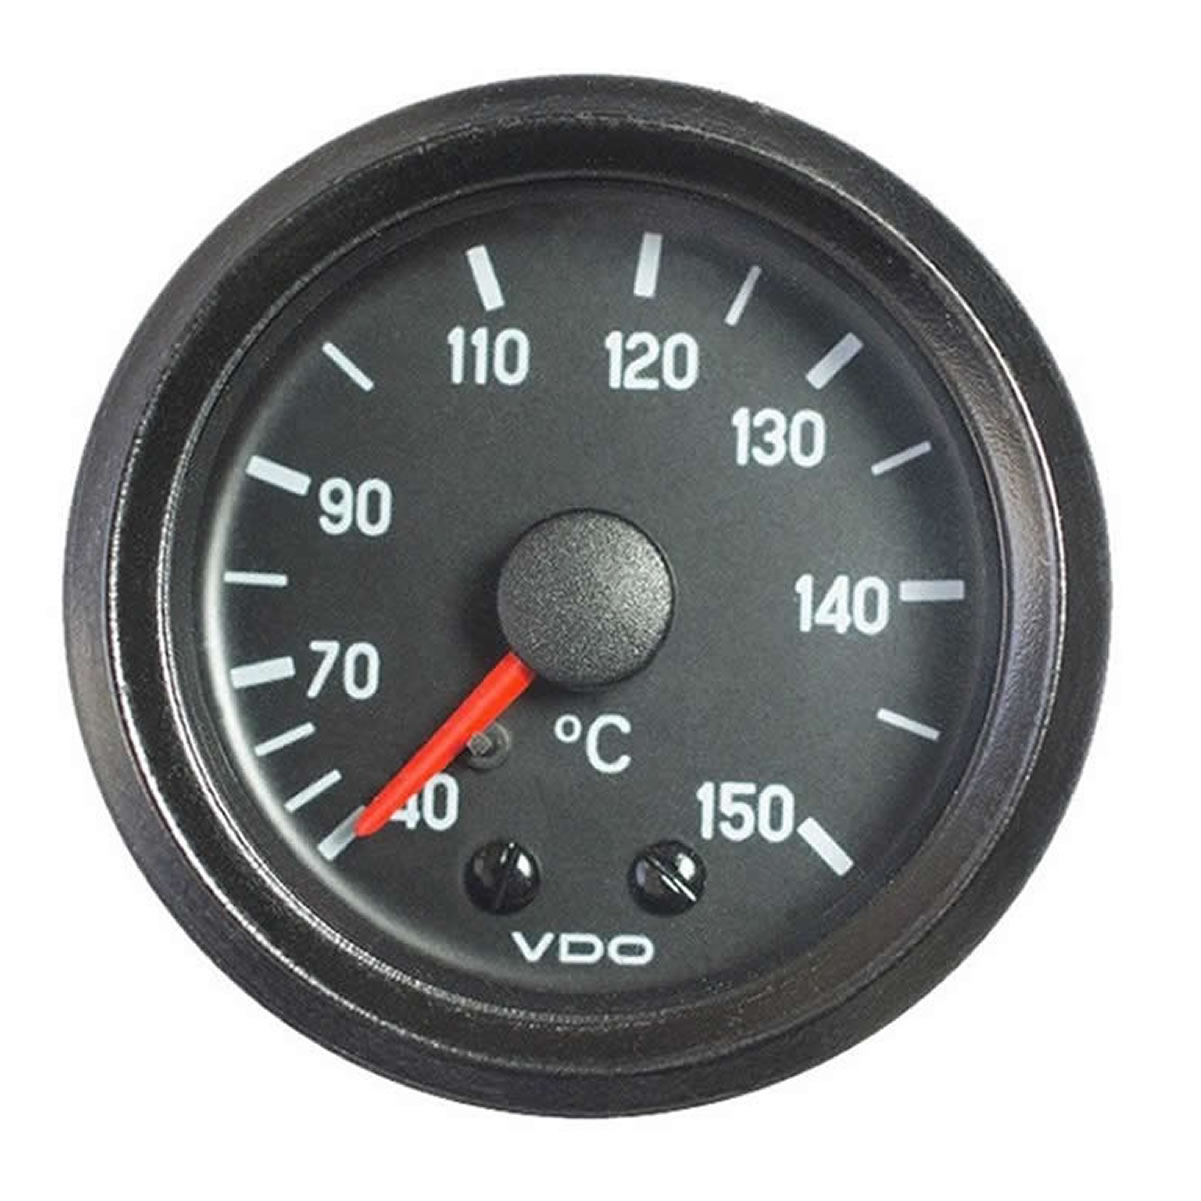 VDO Oil temperature mechanical 150C Gauge